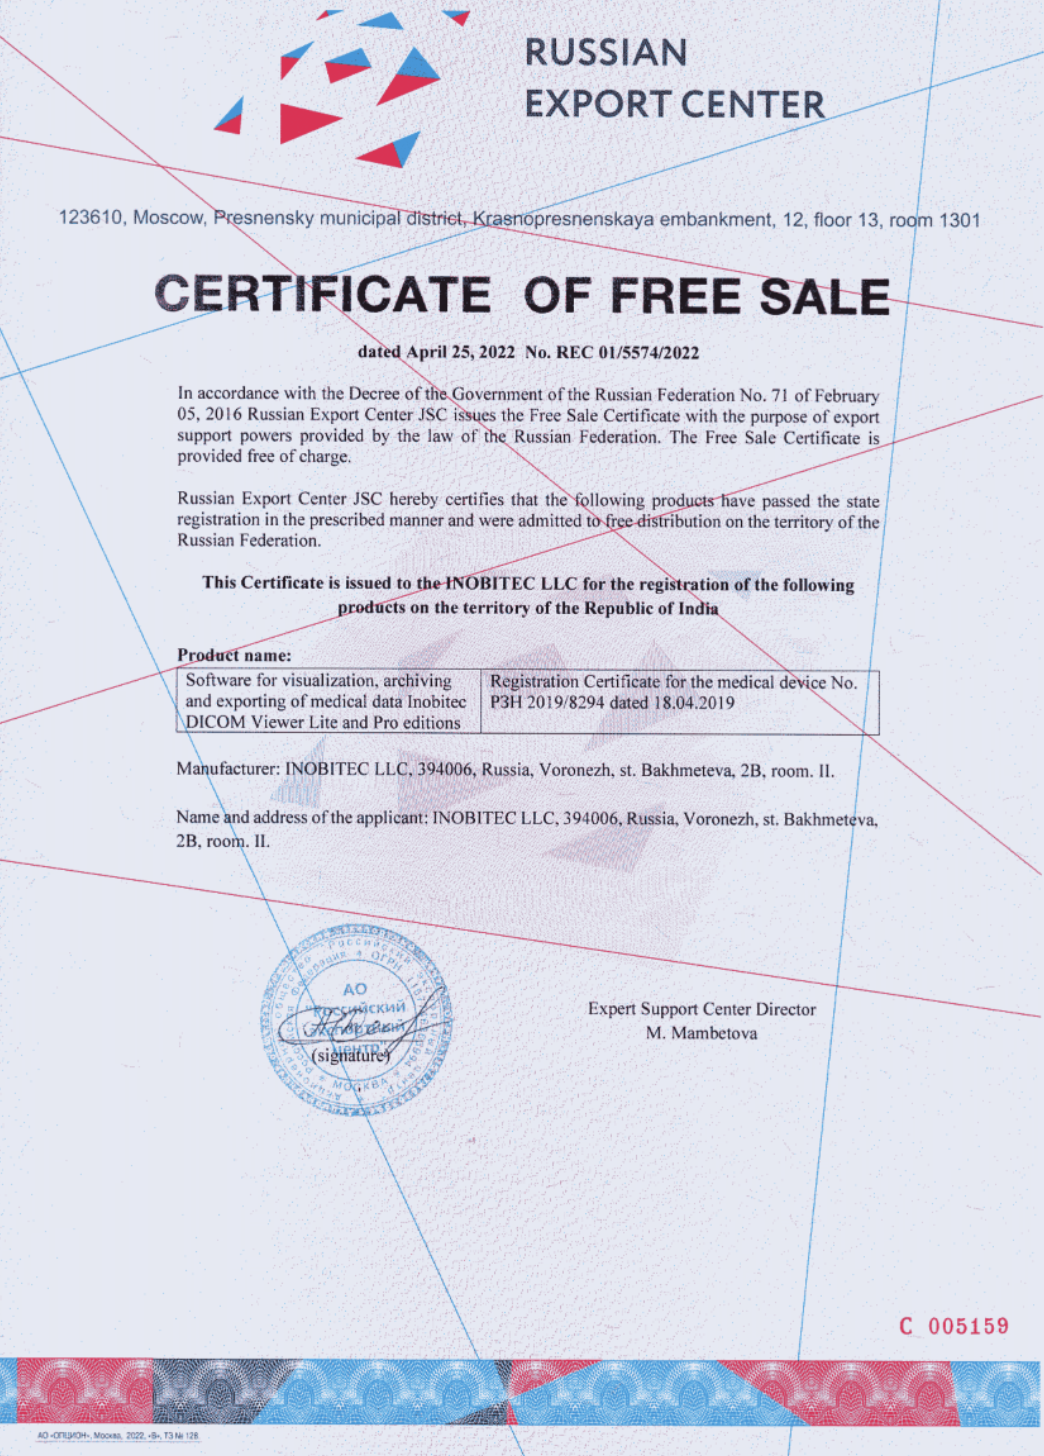 Certificat de Vente Libre No. REC 01/5574/2022